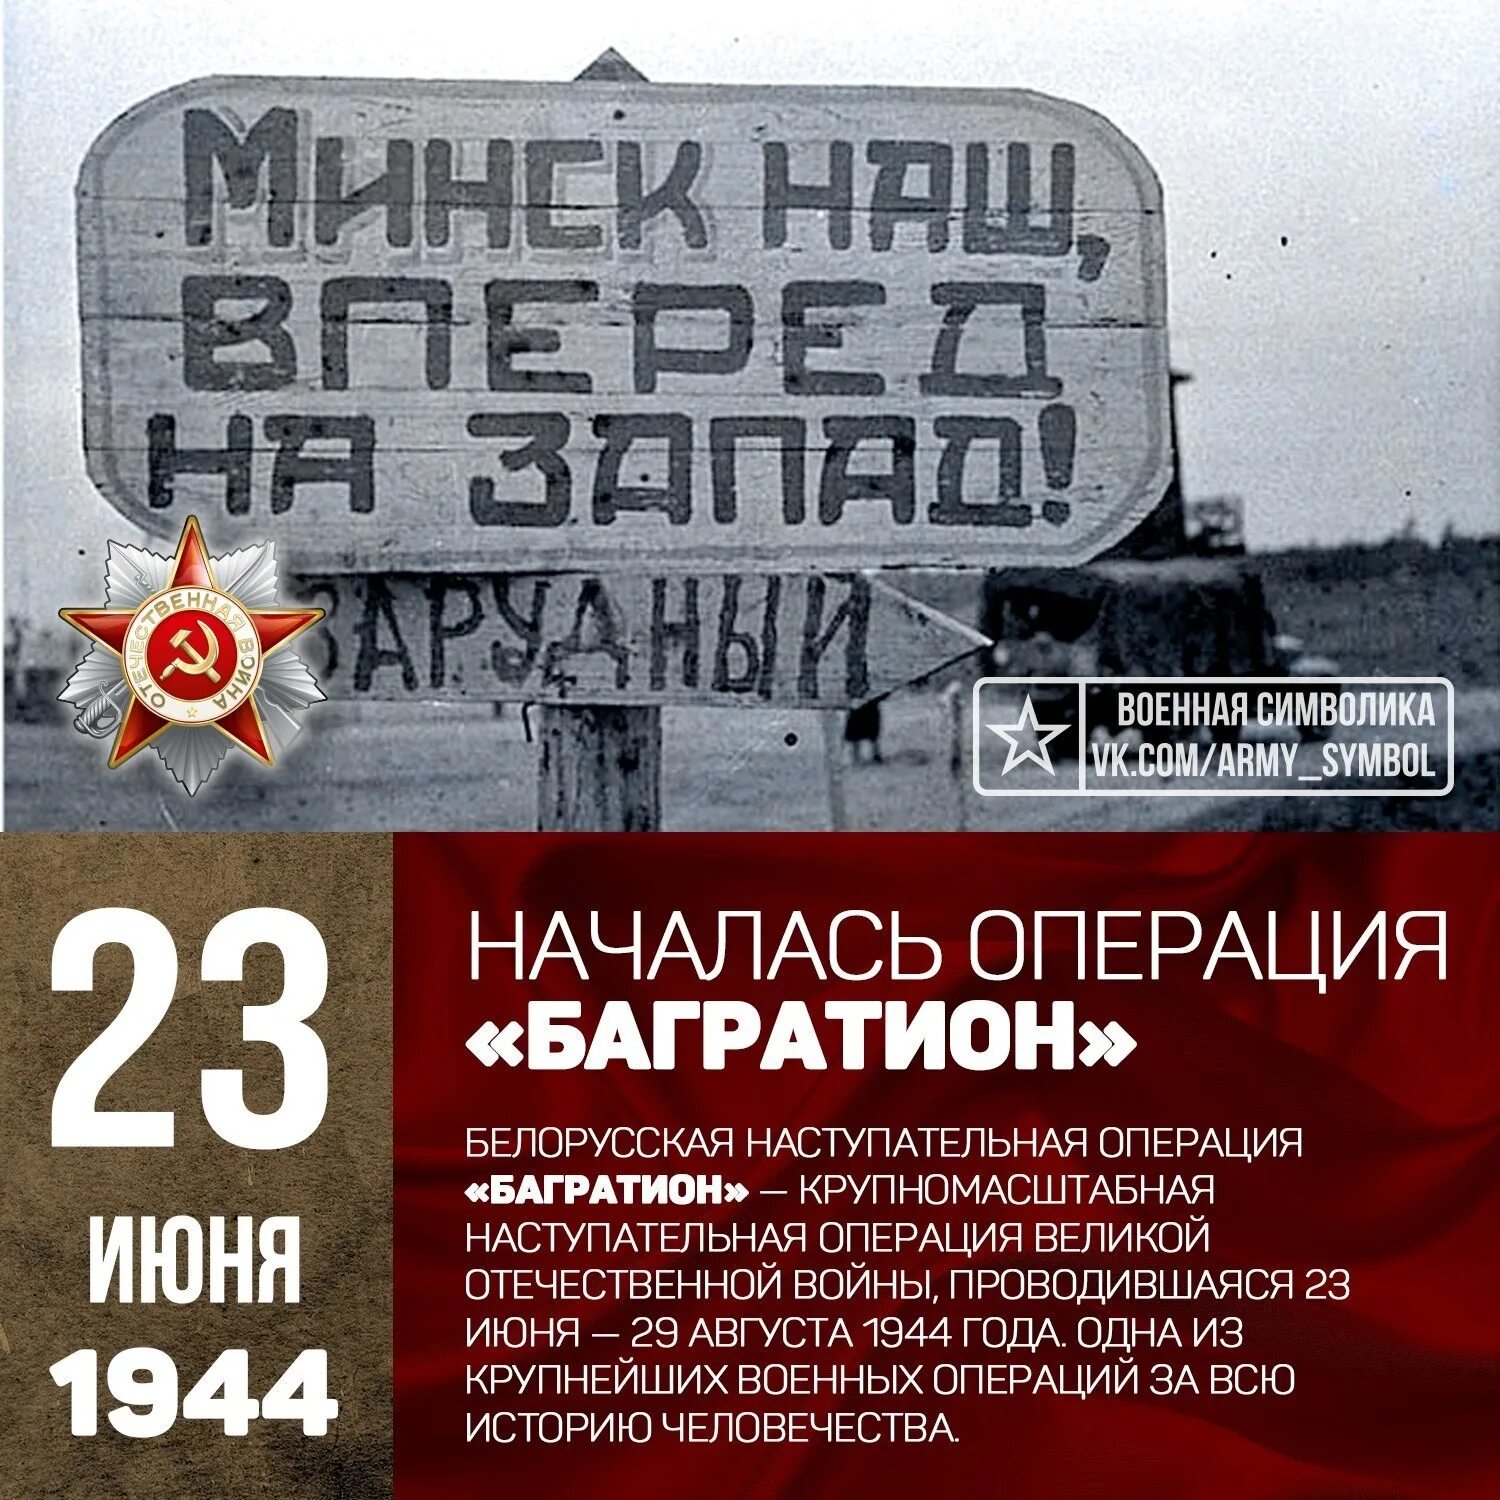 Территория операции багратион. Белорусская операция 23 июня 29 августа 1944. 23 Июня 1944 года началась операция Багратион. 23 Июня началась белорусская наступательная операция «Багратион». Белоруссия 1944 Багратион.